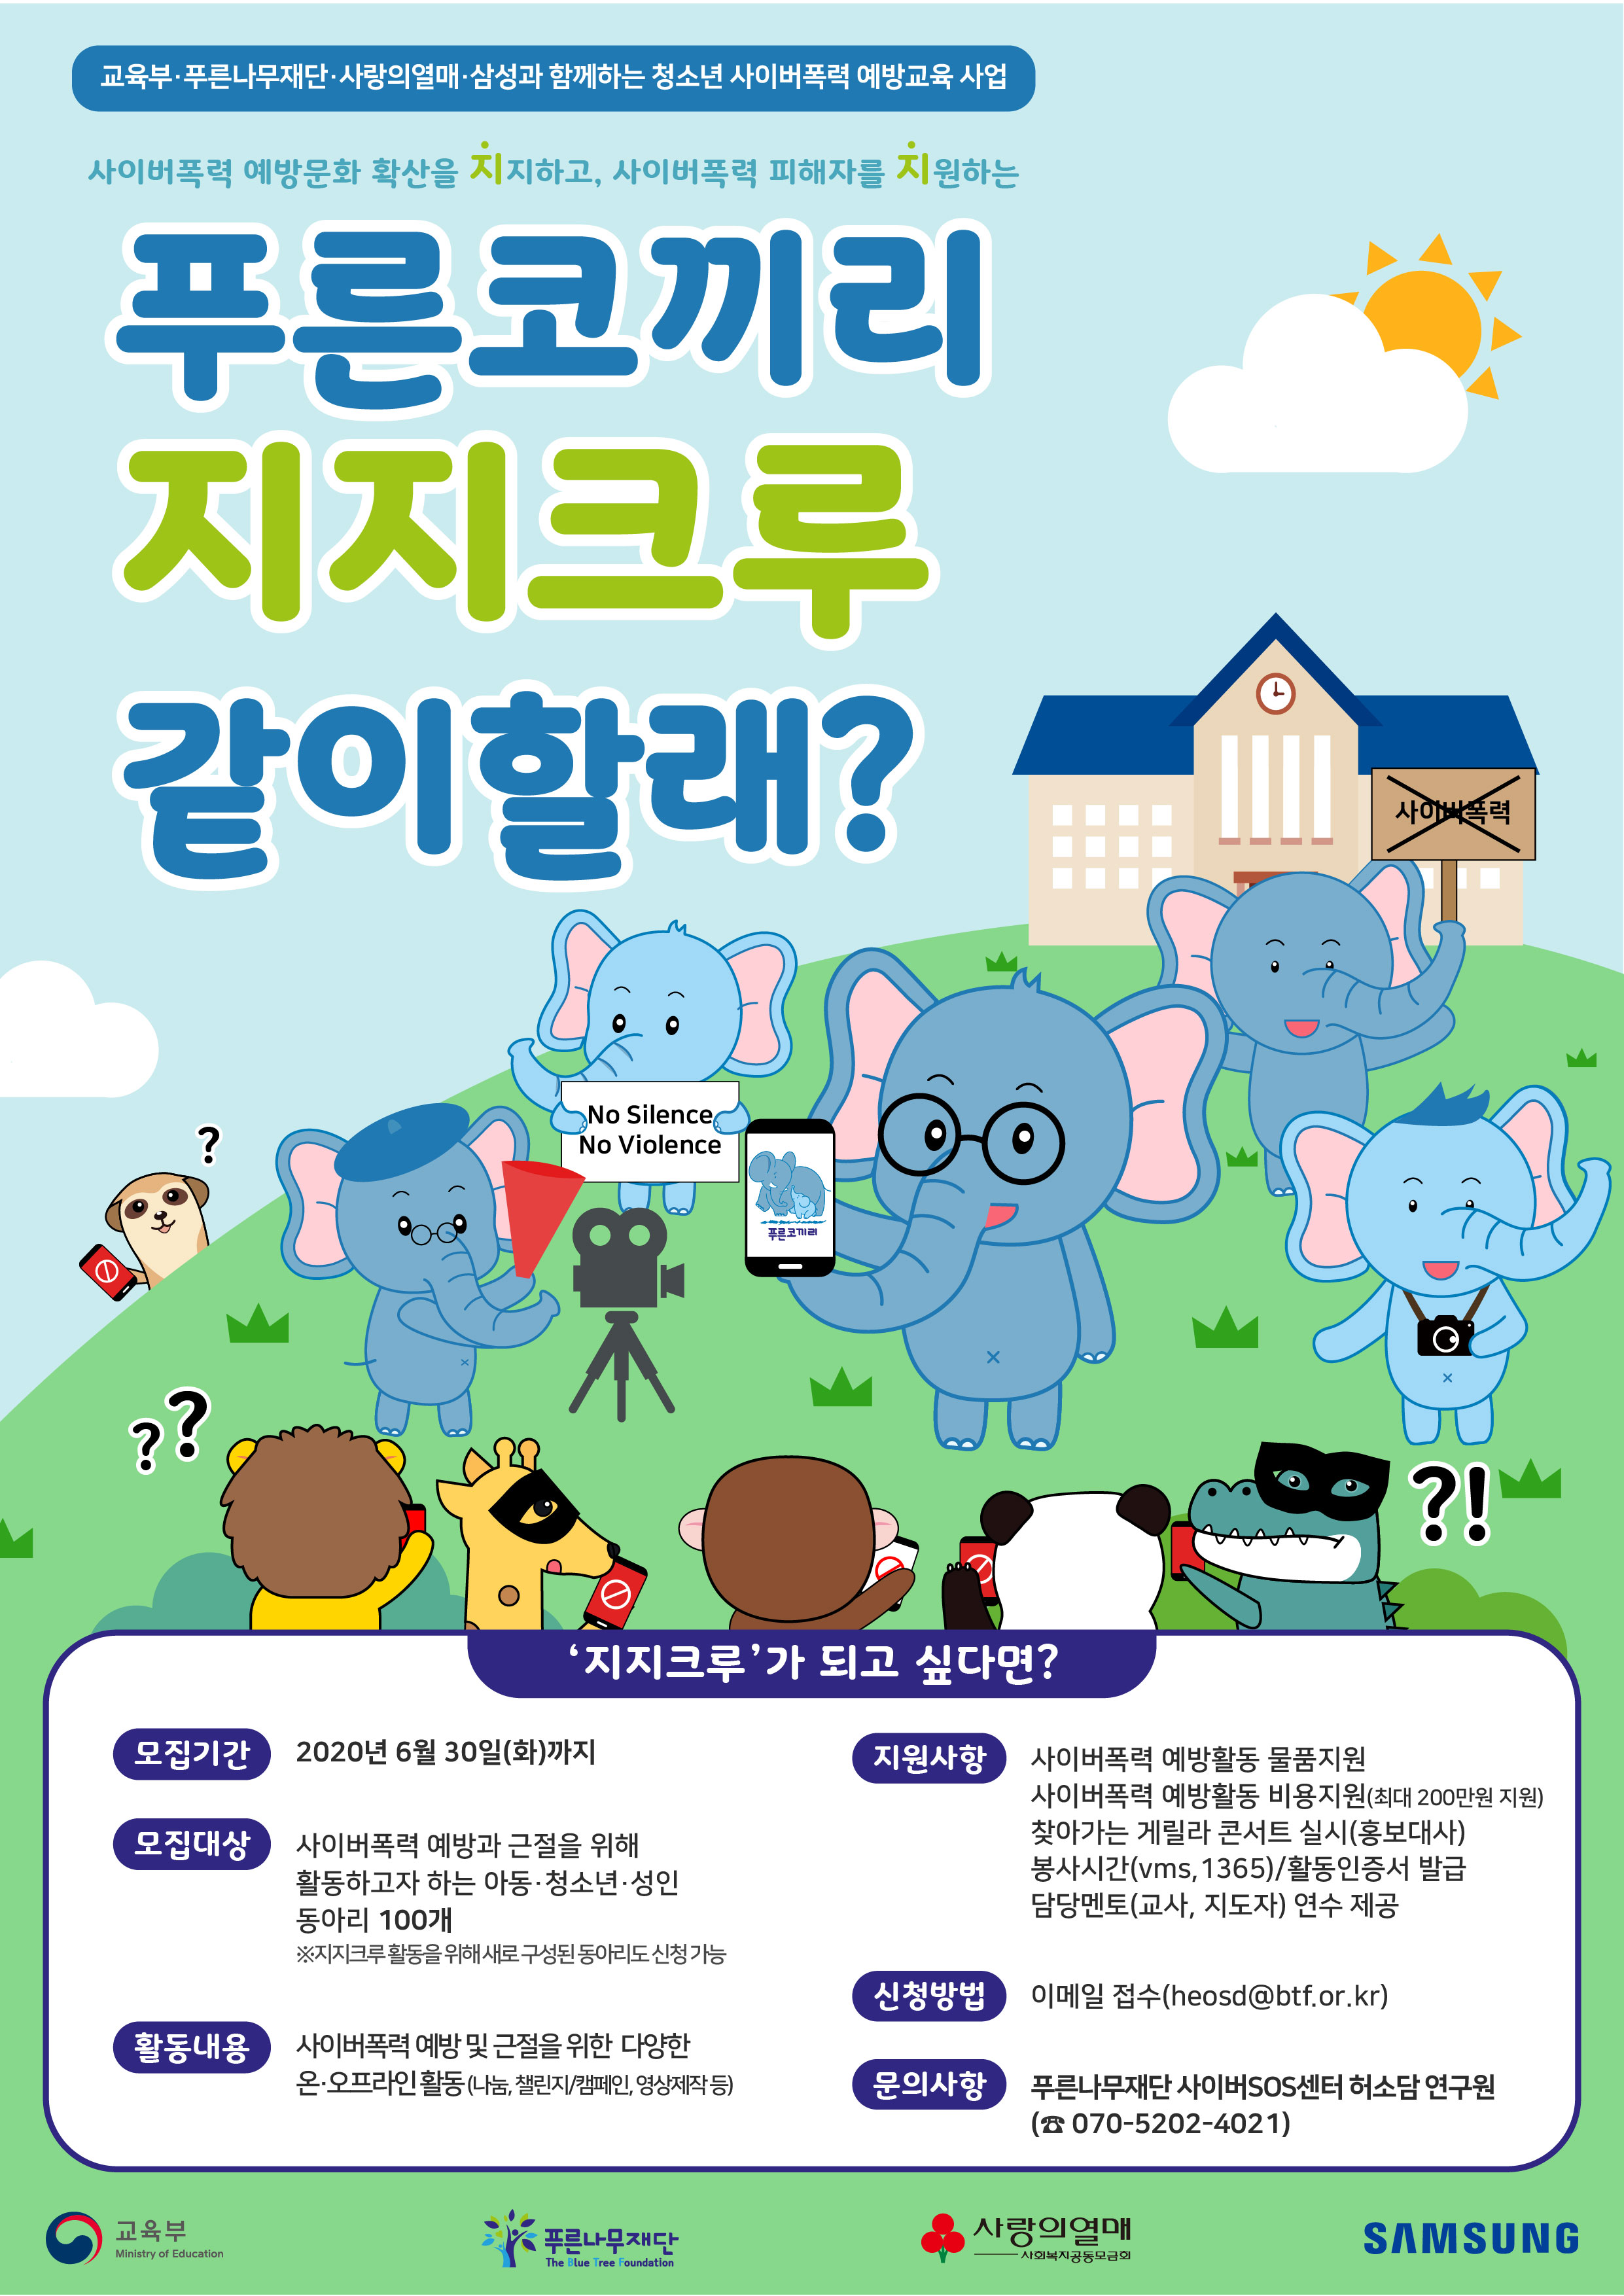 서울특별시립청소년미디어센터 업무지원팀_푸른코끼리 지지크루(동아리) 모집 웹포스터